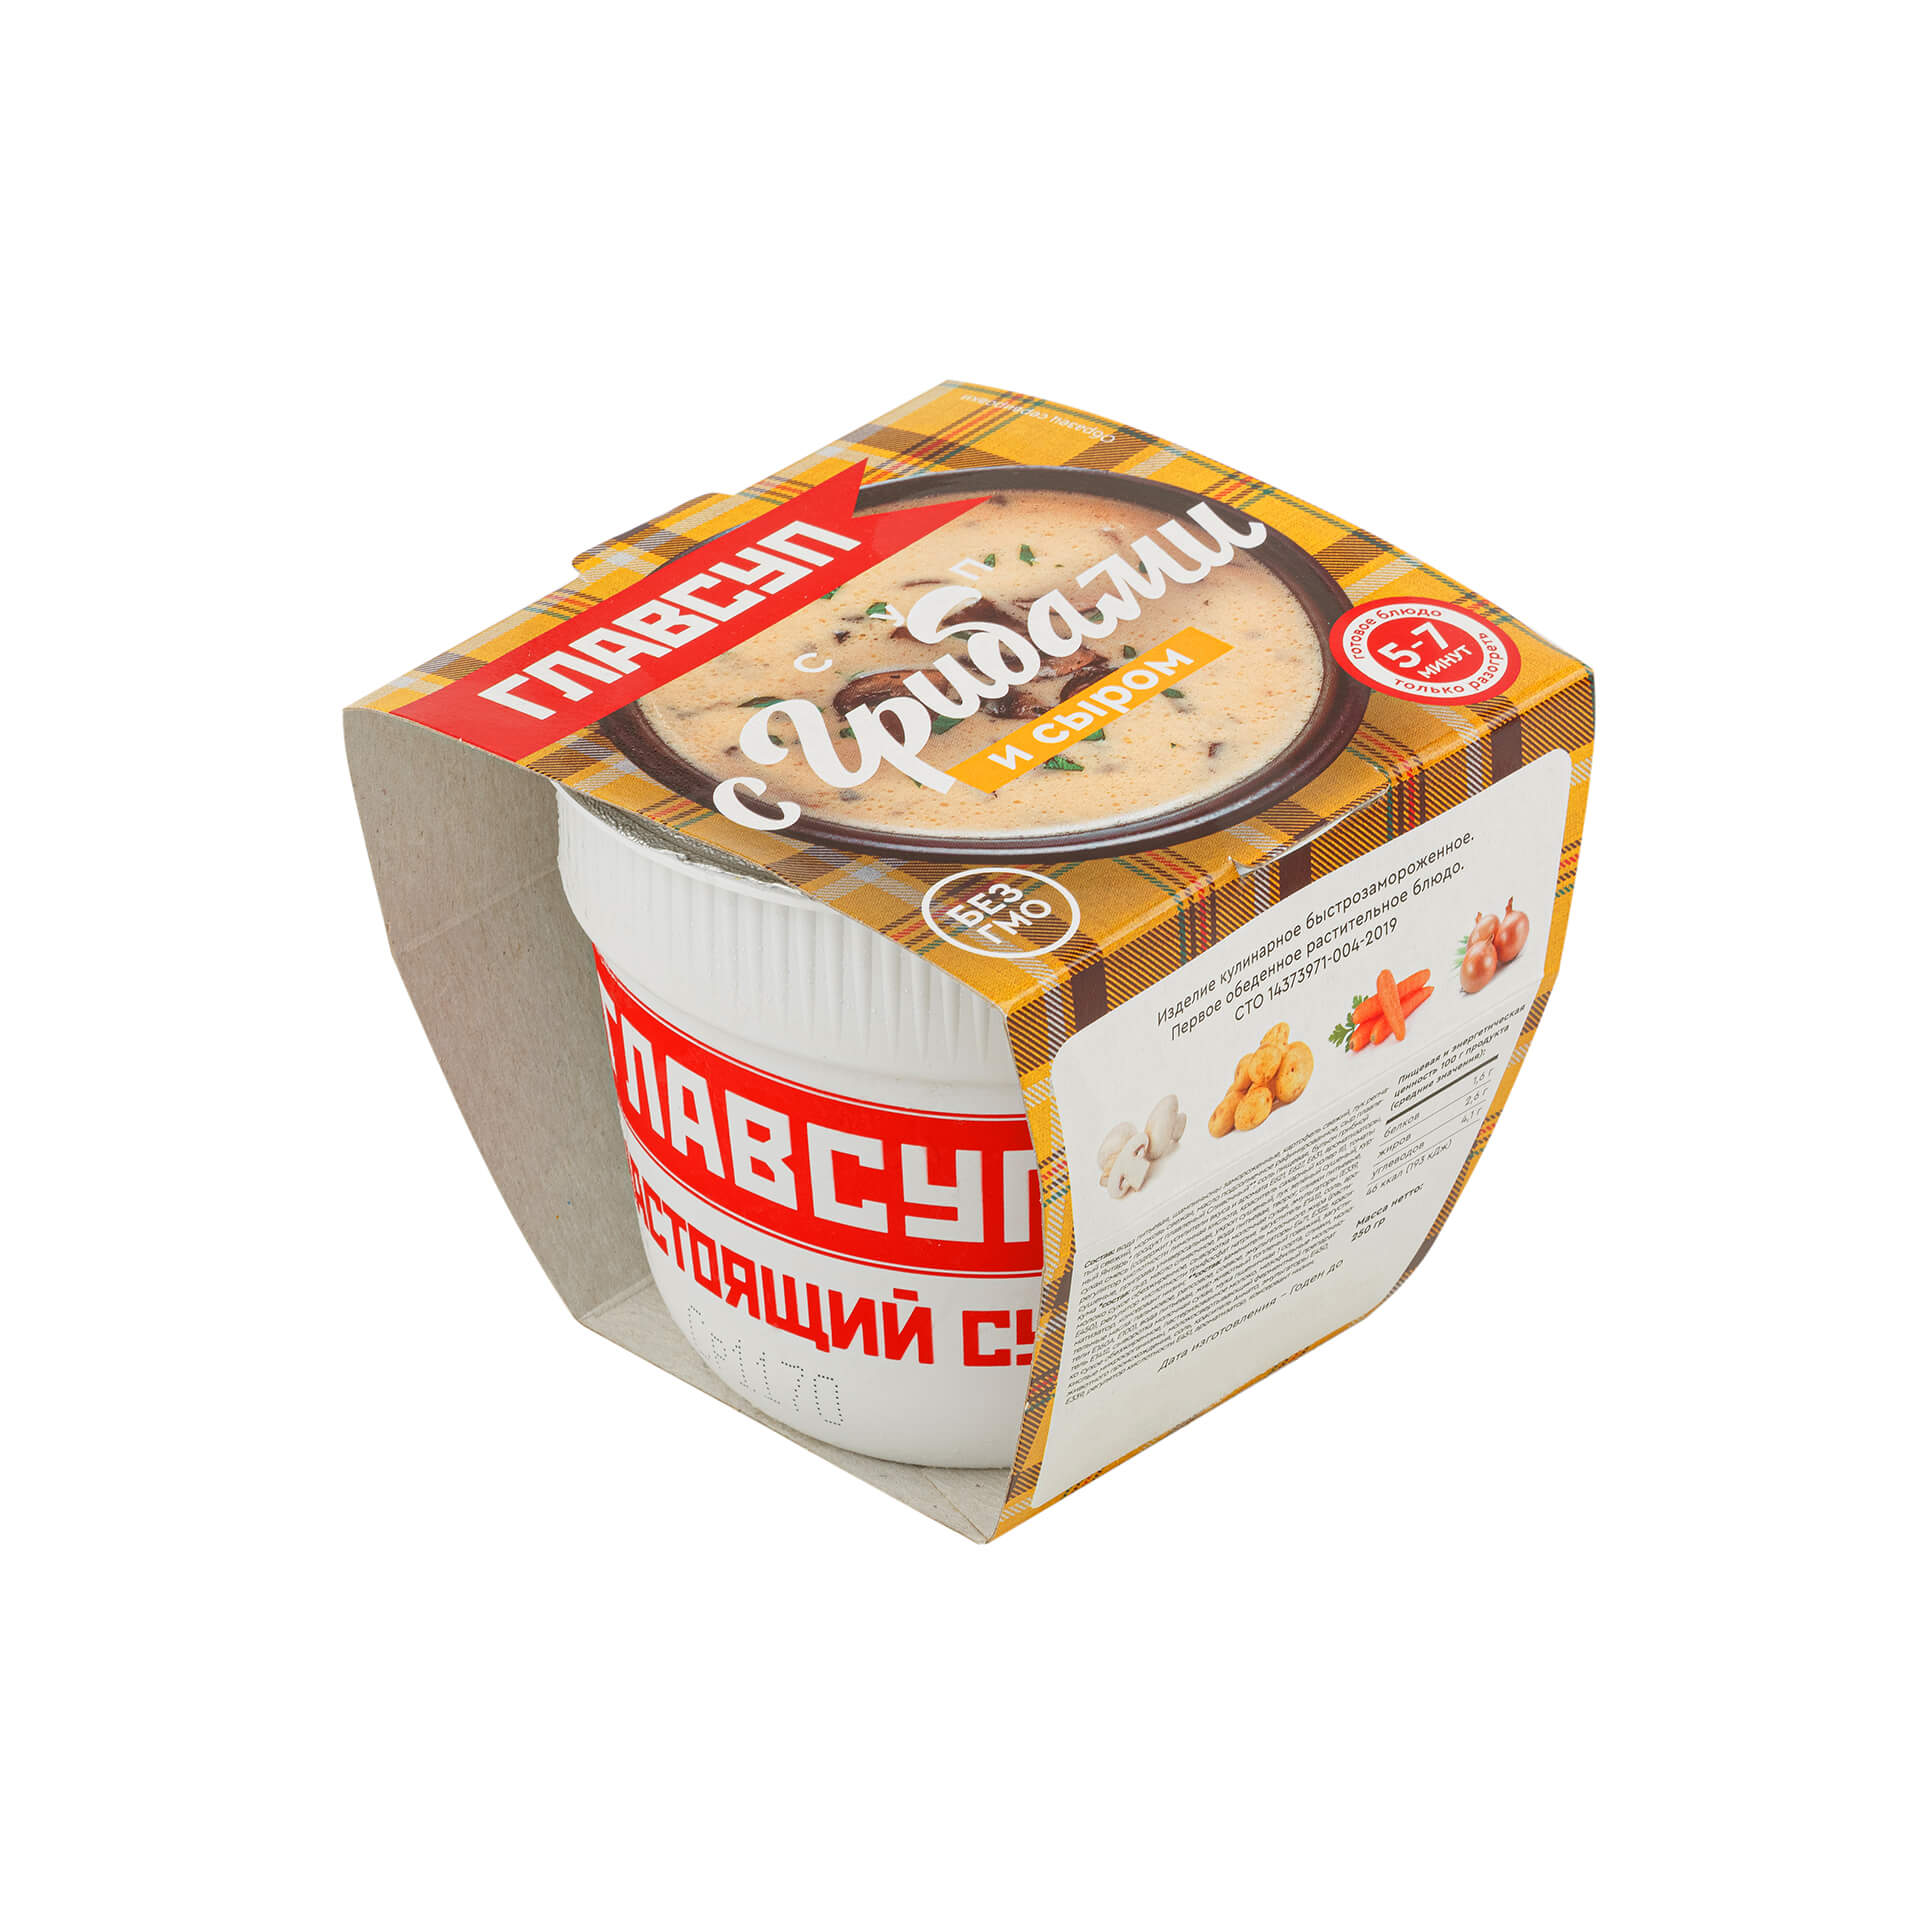 Суп с грибами и сыром блюдо готовое замороженное Главсуп 250 г 721LED, общий вид, купить оптом с доставкой по москве и московской области, недорого, низкая цена